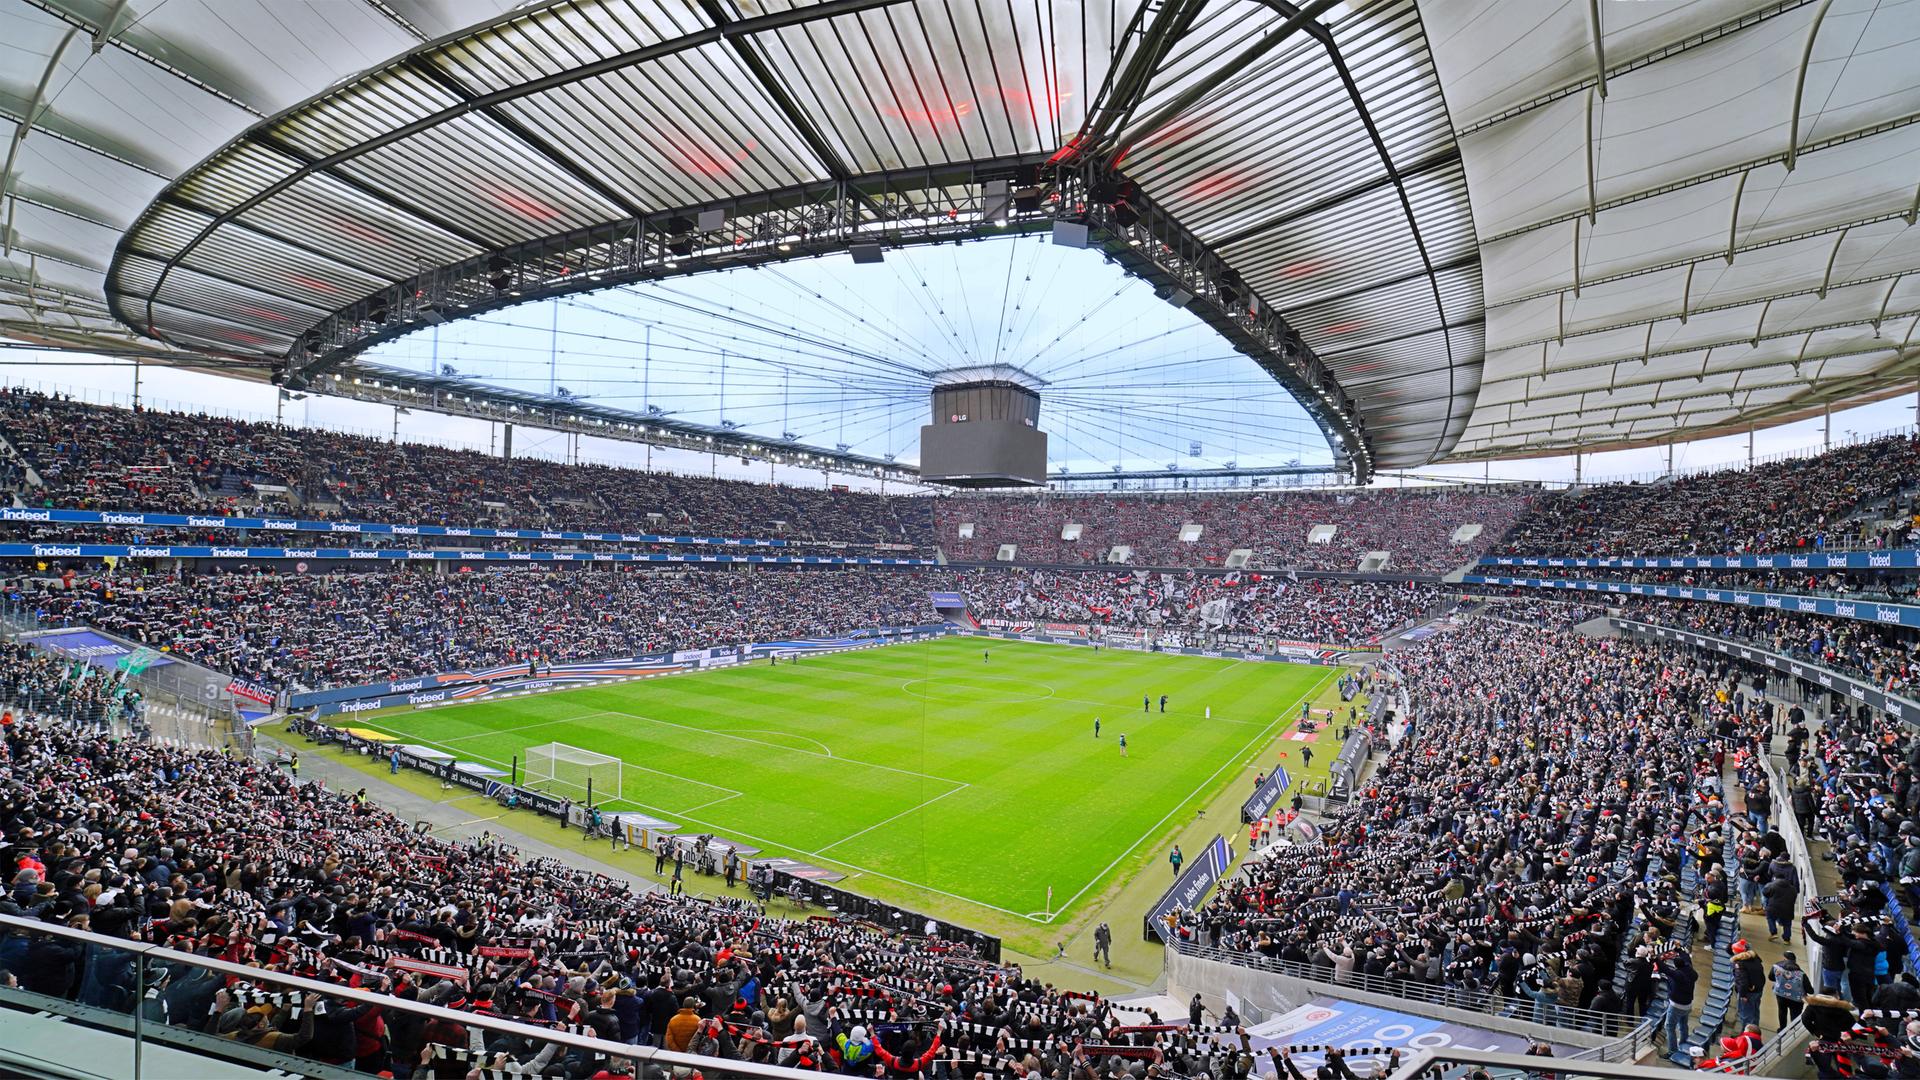 Ausbau des Eintracht-Stadions in Frankfurt: Steuergeld für Luxusplätze ...